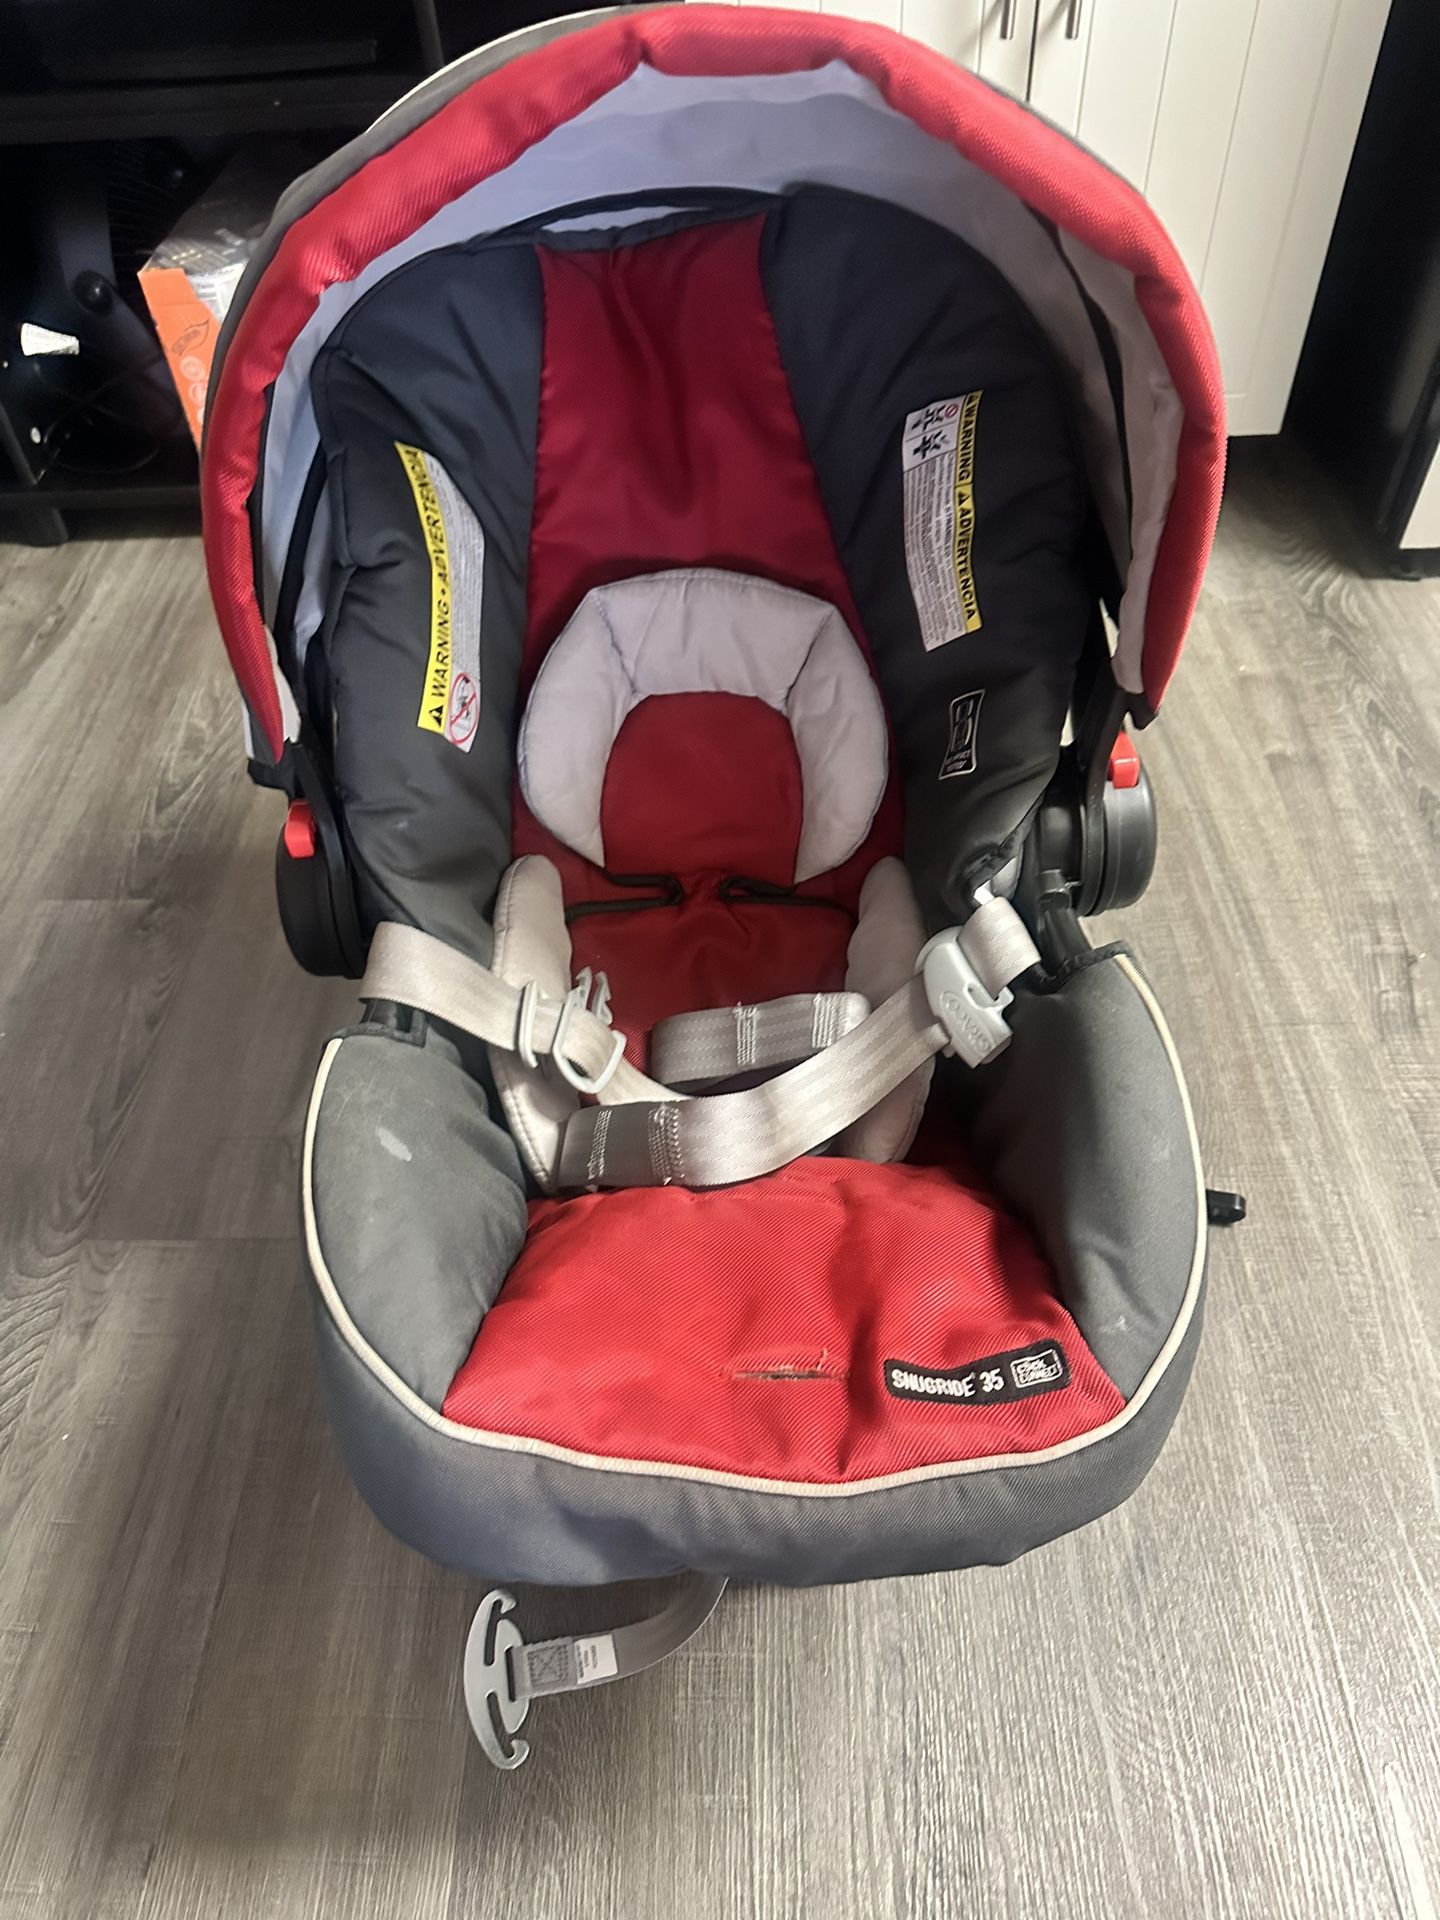 Graco SnugRide 35 Infant Car Seat